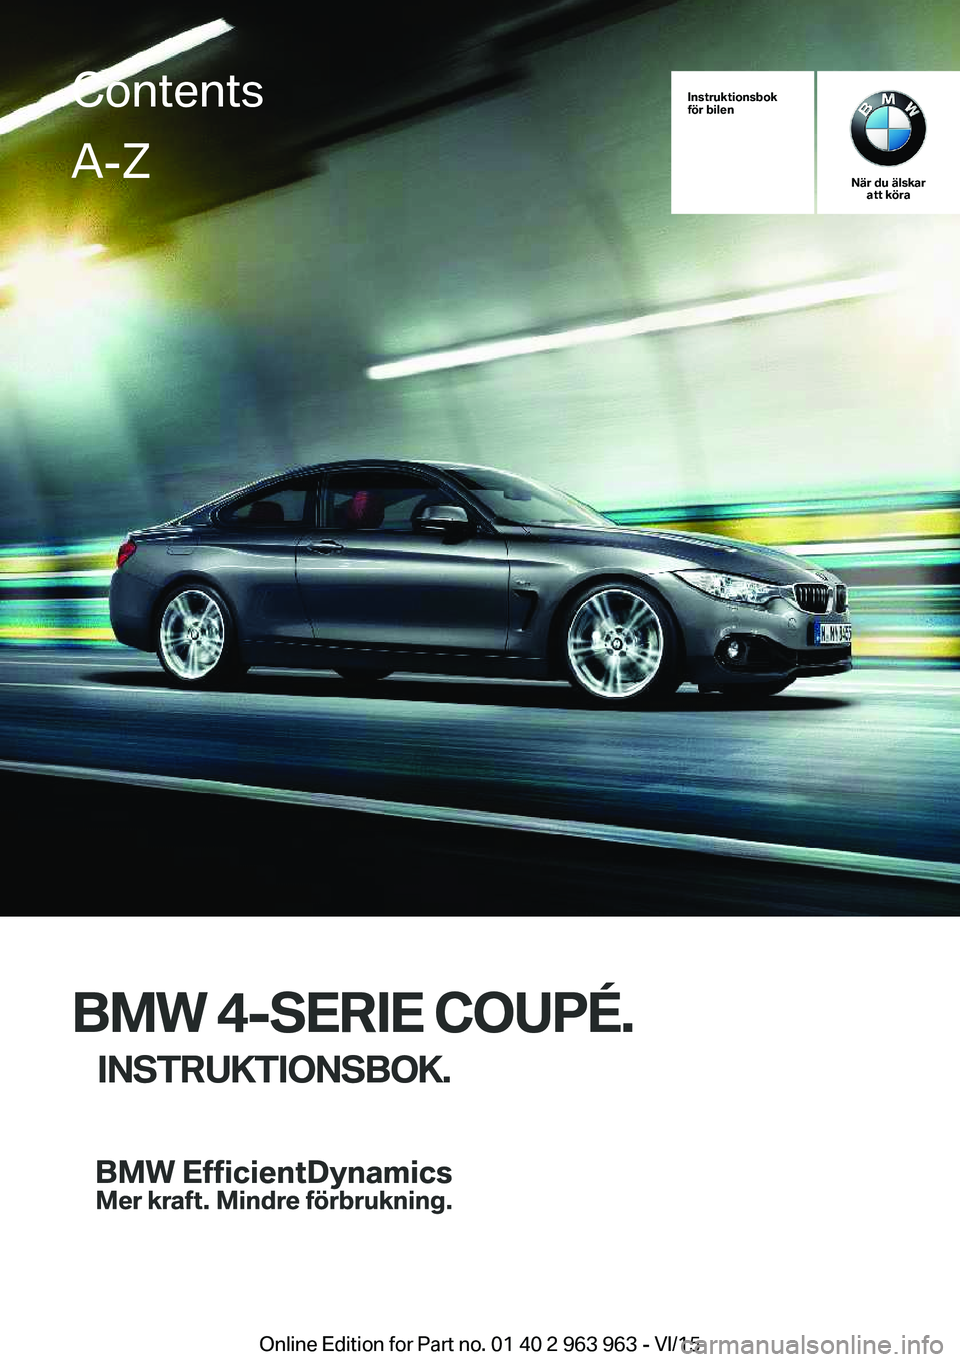 BMW 4 SERIES COUPE 2016  InstruktionsbÖcker (in Swedish) Instruktionsbok
för bilen
När du älskar att köra
BMW 4-SERIE COUPÉ.
INSTRUKTIONSBOK.
ContentsA-Z
Online Edition for Part no. 01 40 2 963 963 - VI/15   